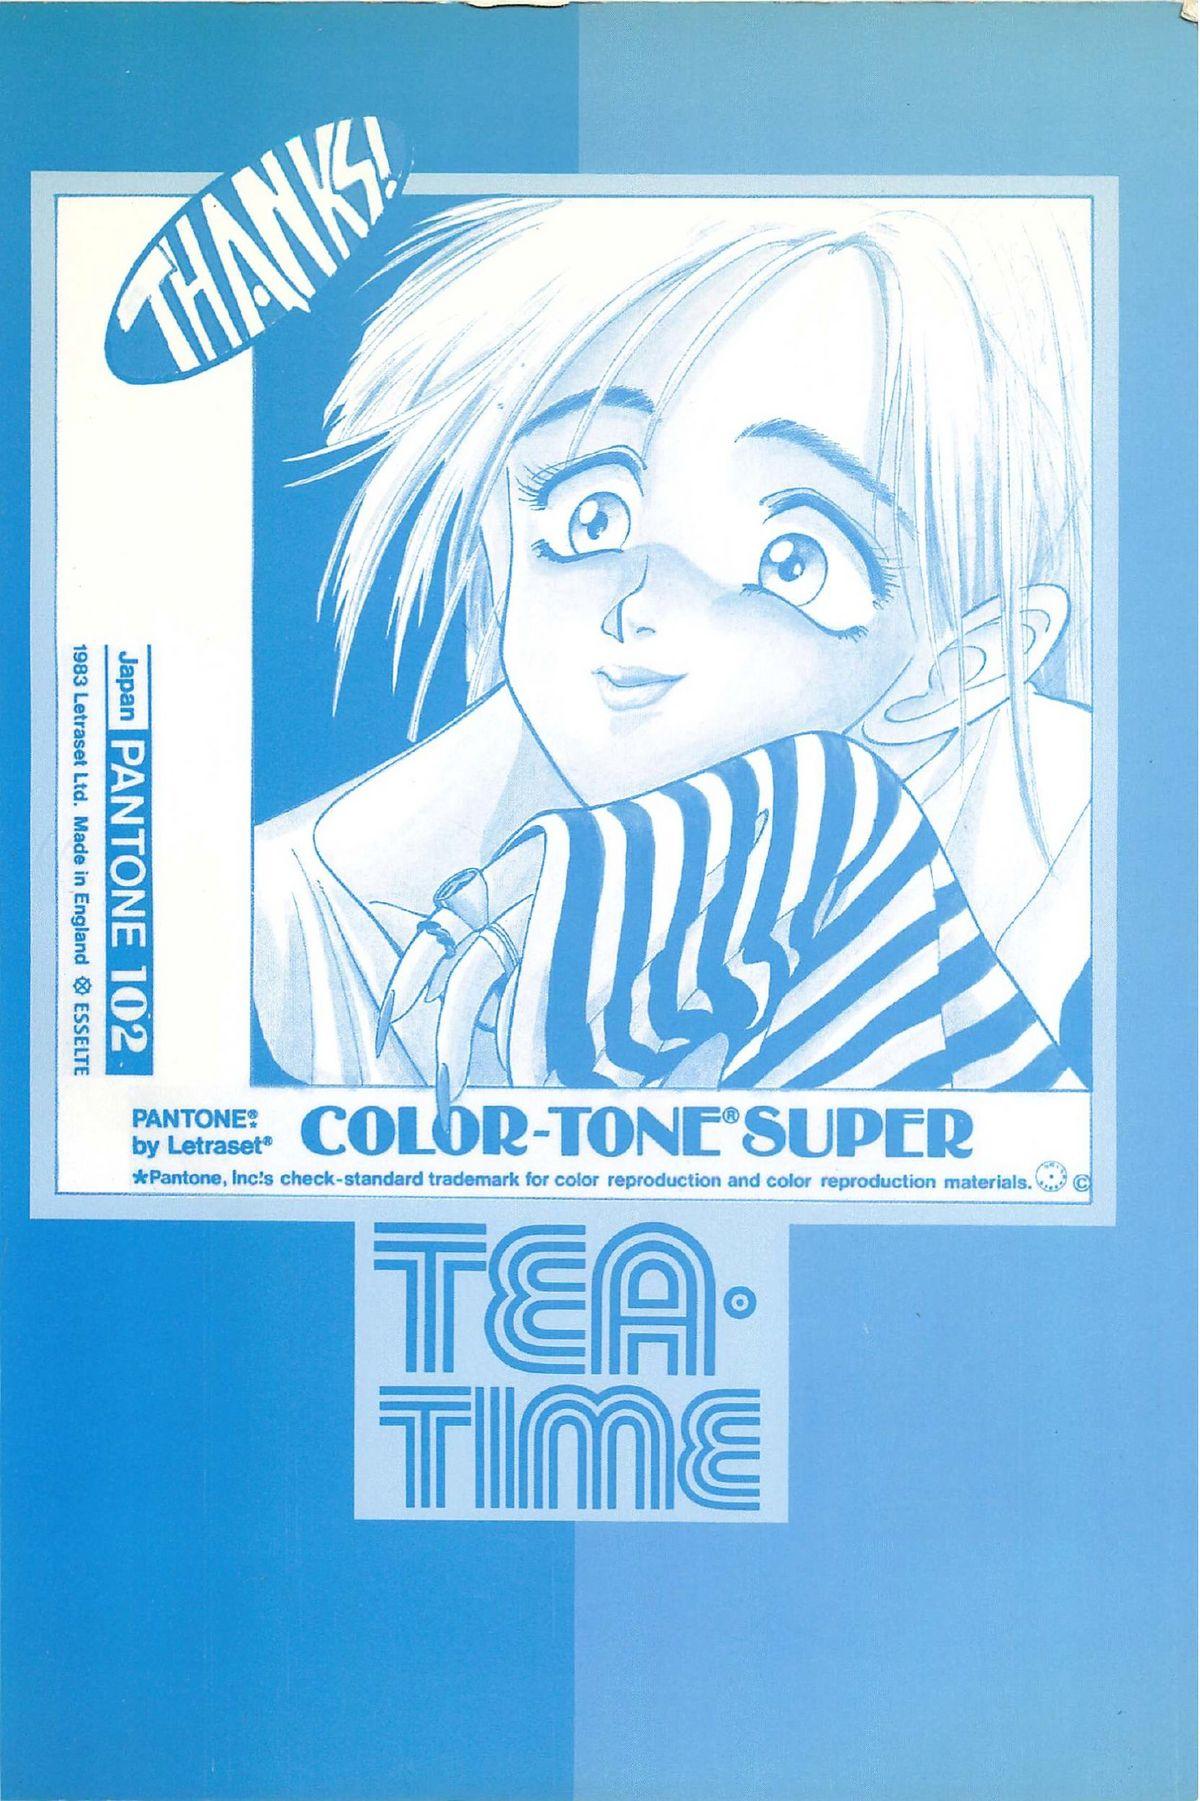 TEA TIME 6 190